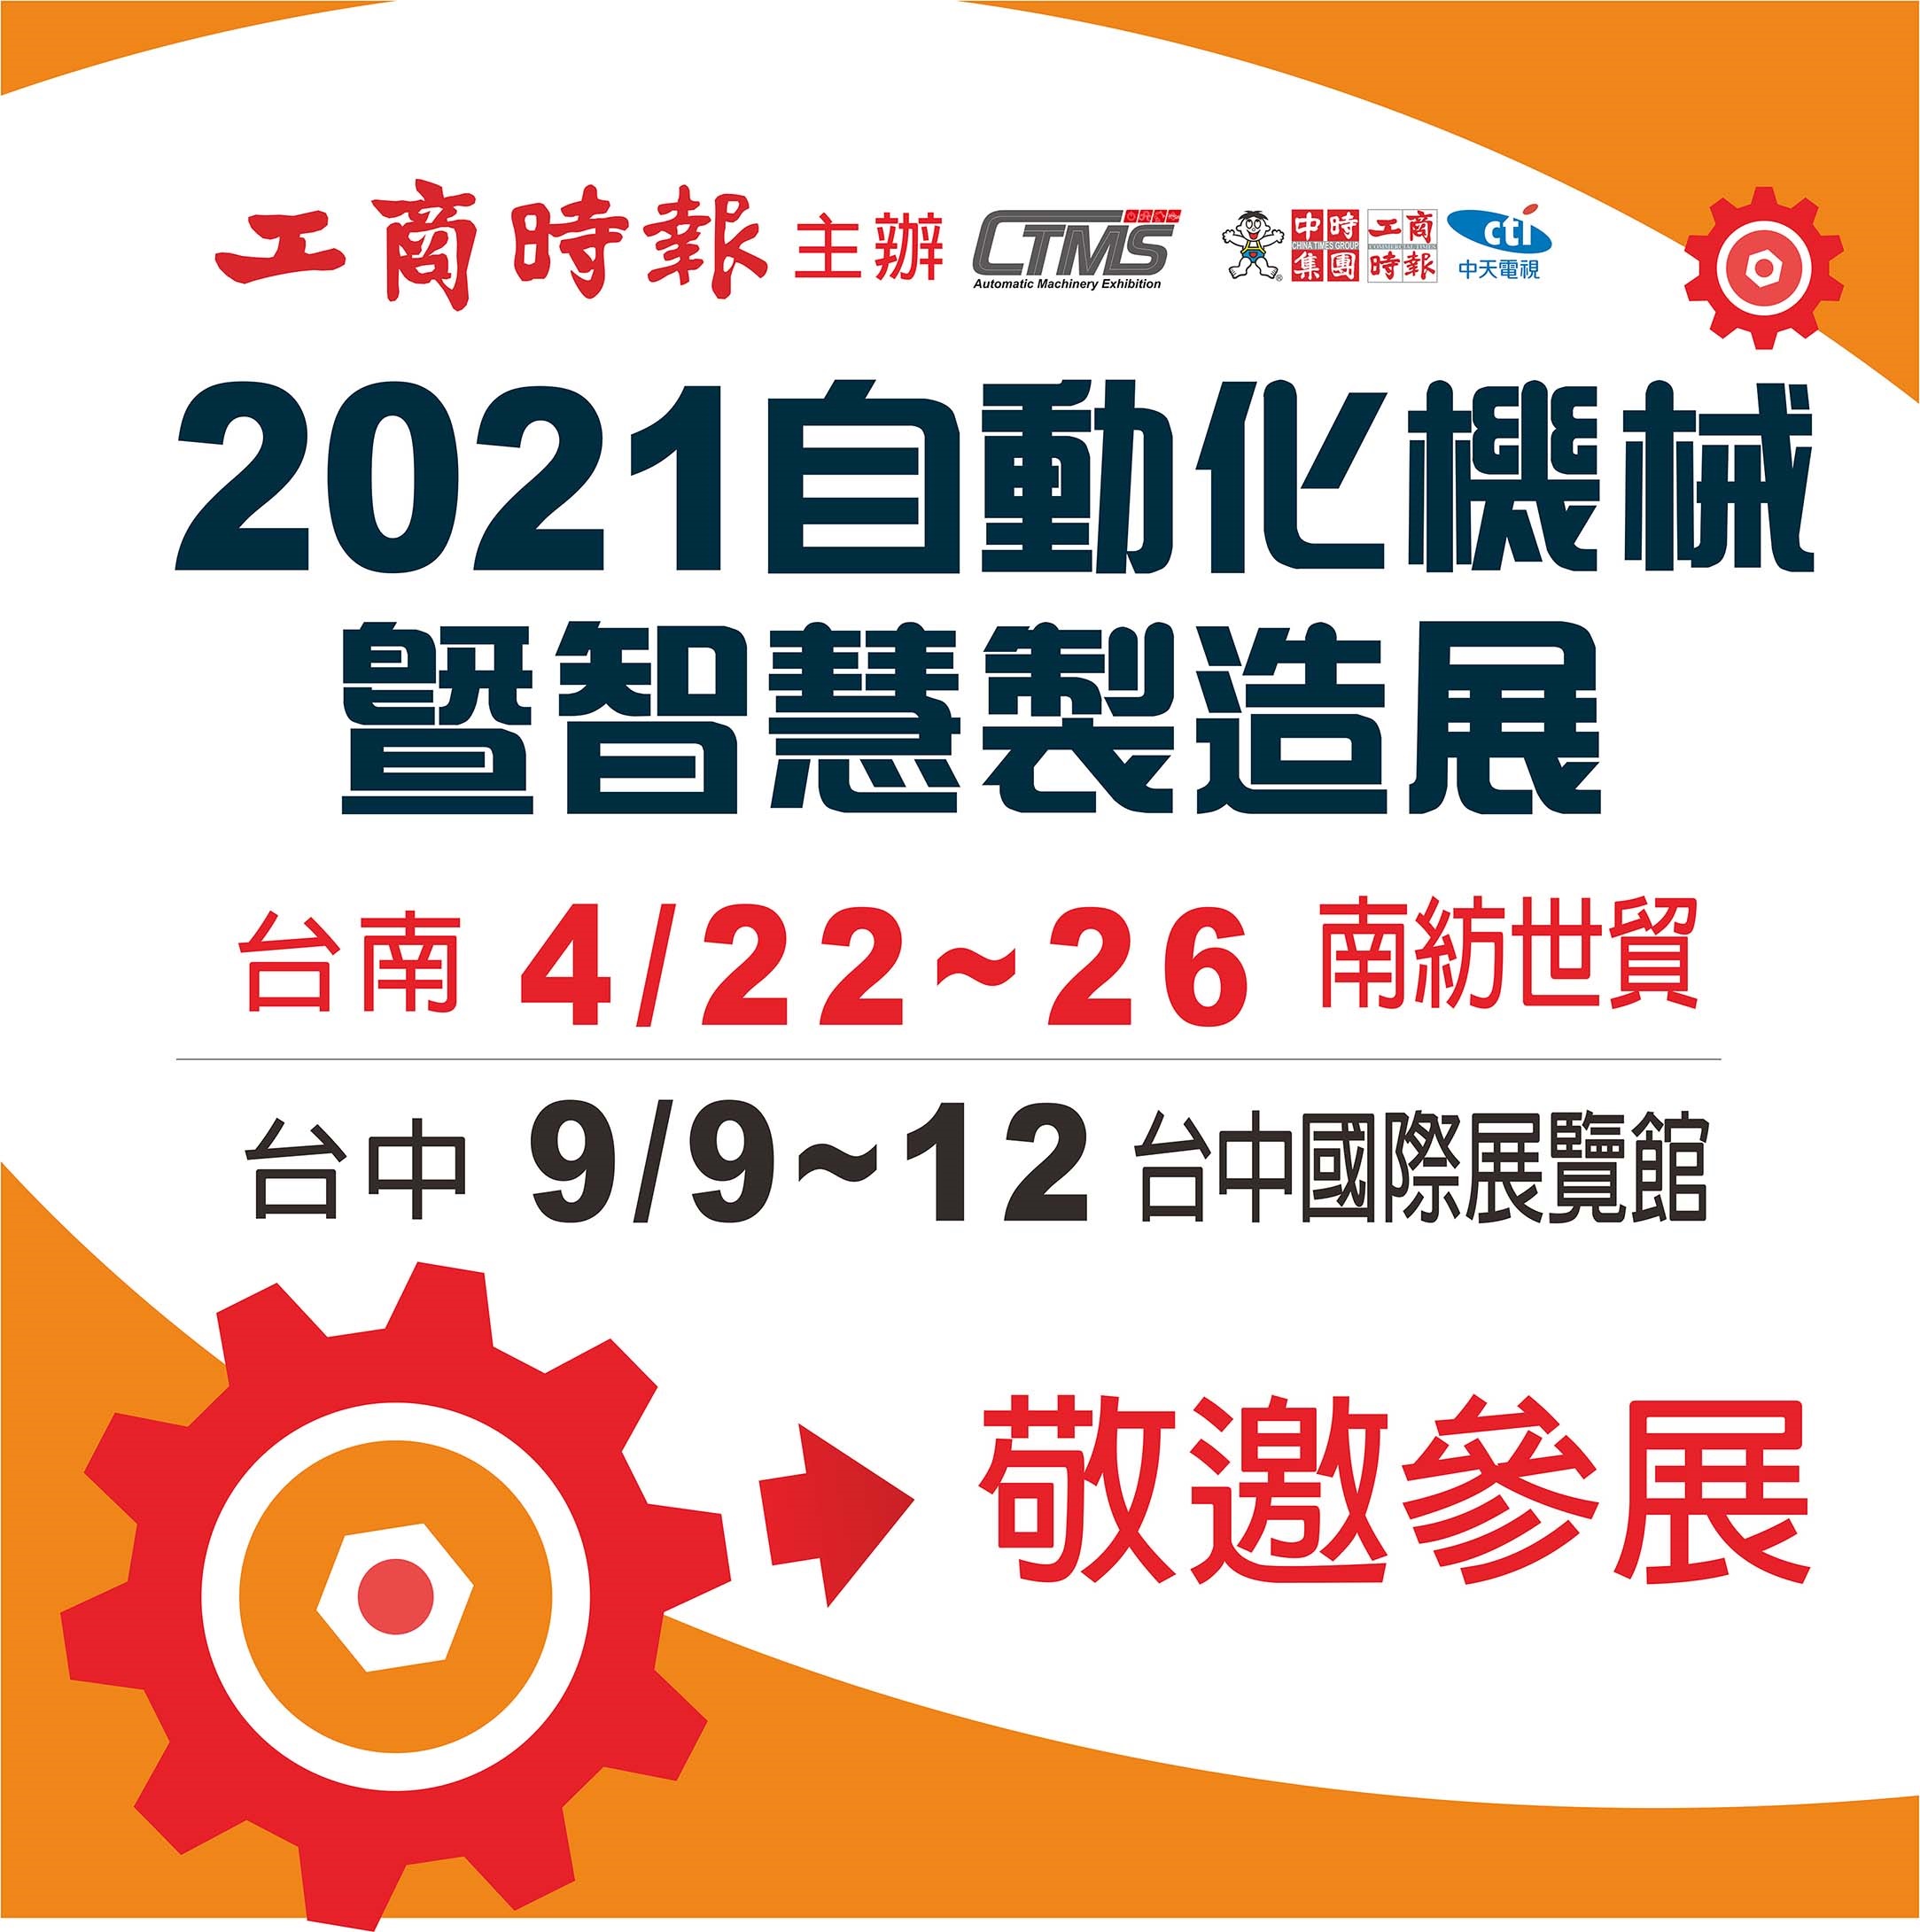 2021 台南自動化機械暨智慧製造展